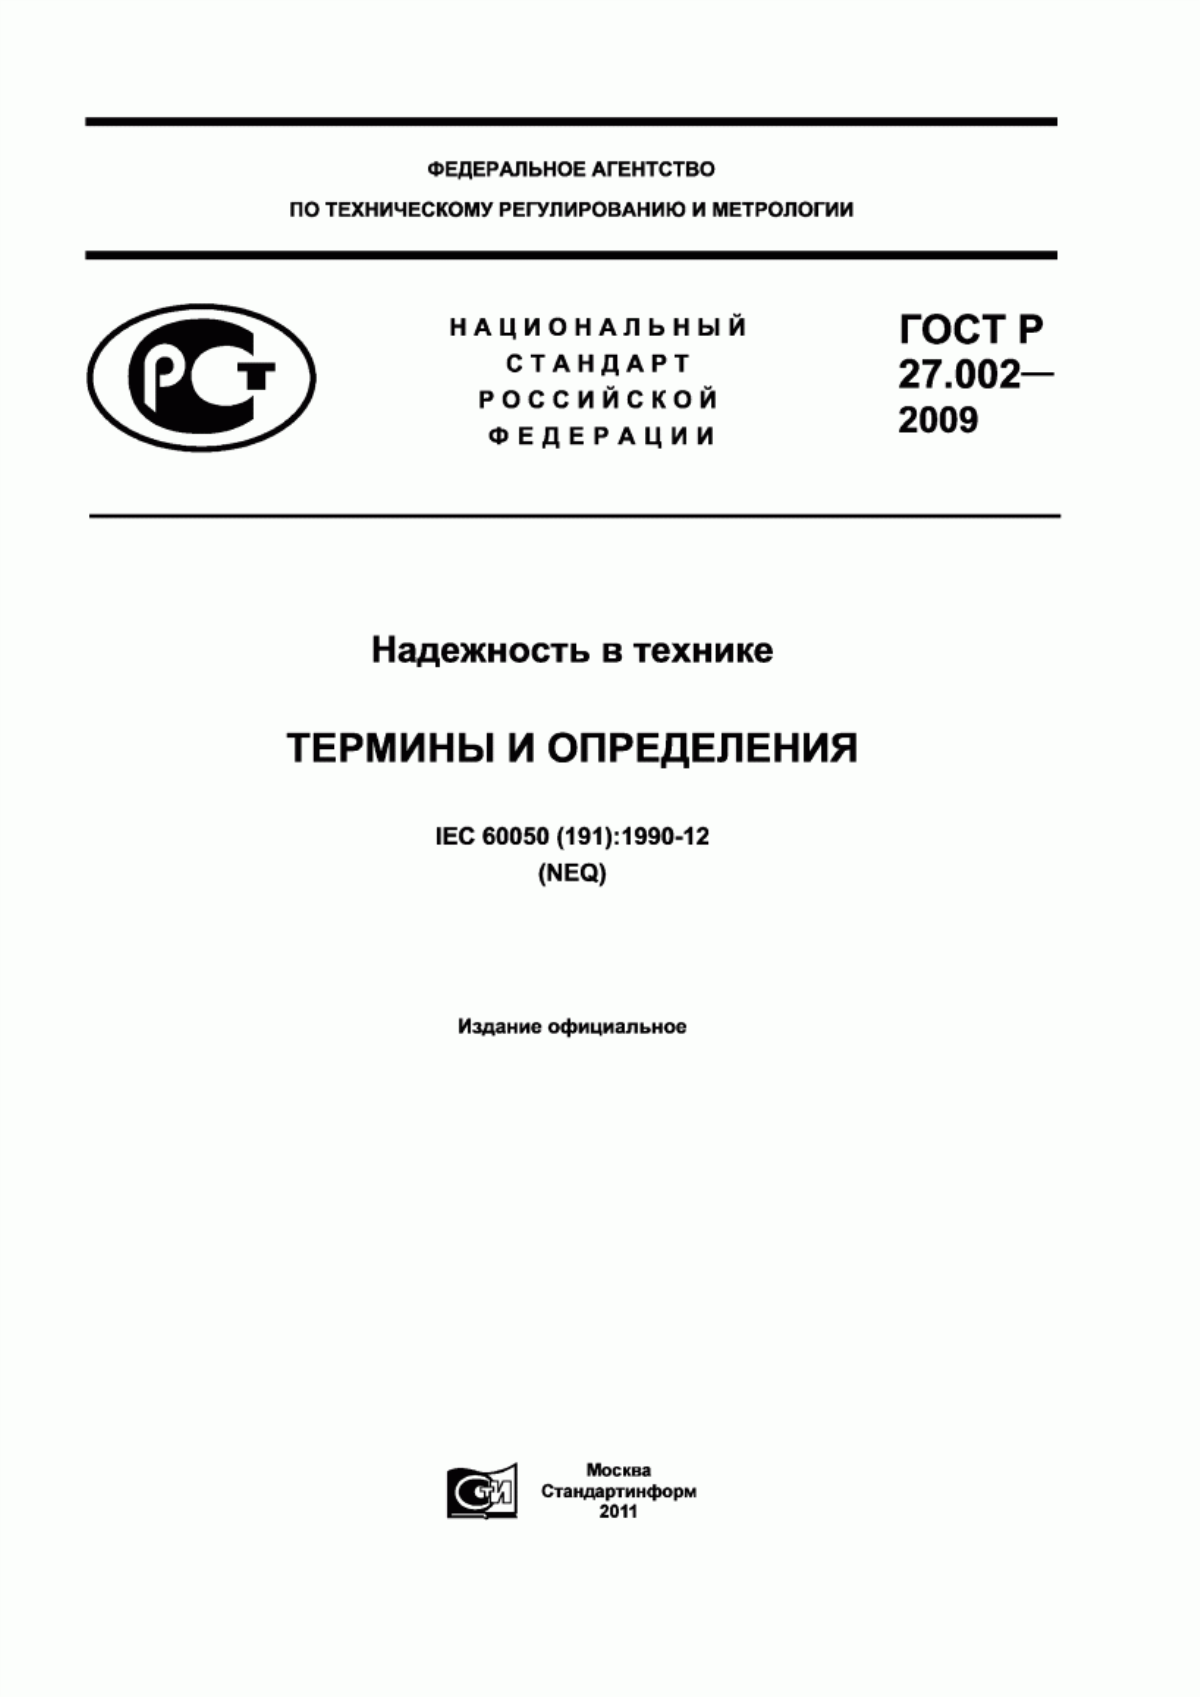 ГОСТ Р 27.002-2009 Надежность в технике. Термины и определения